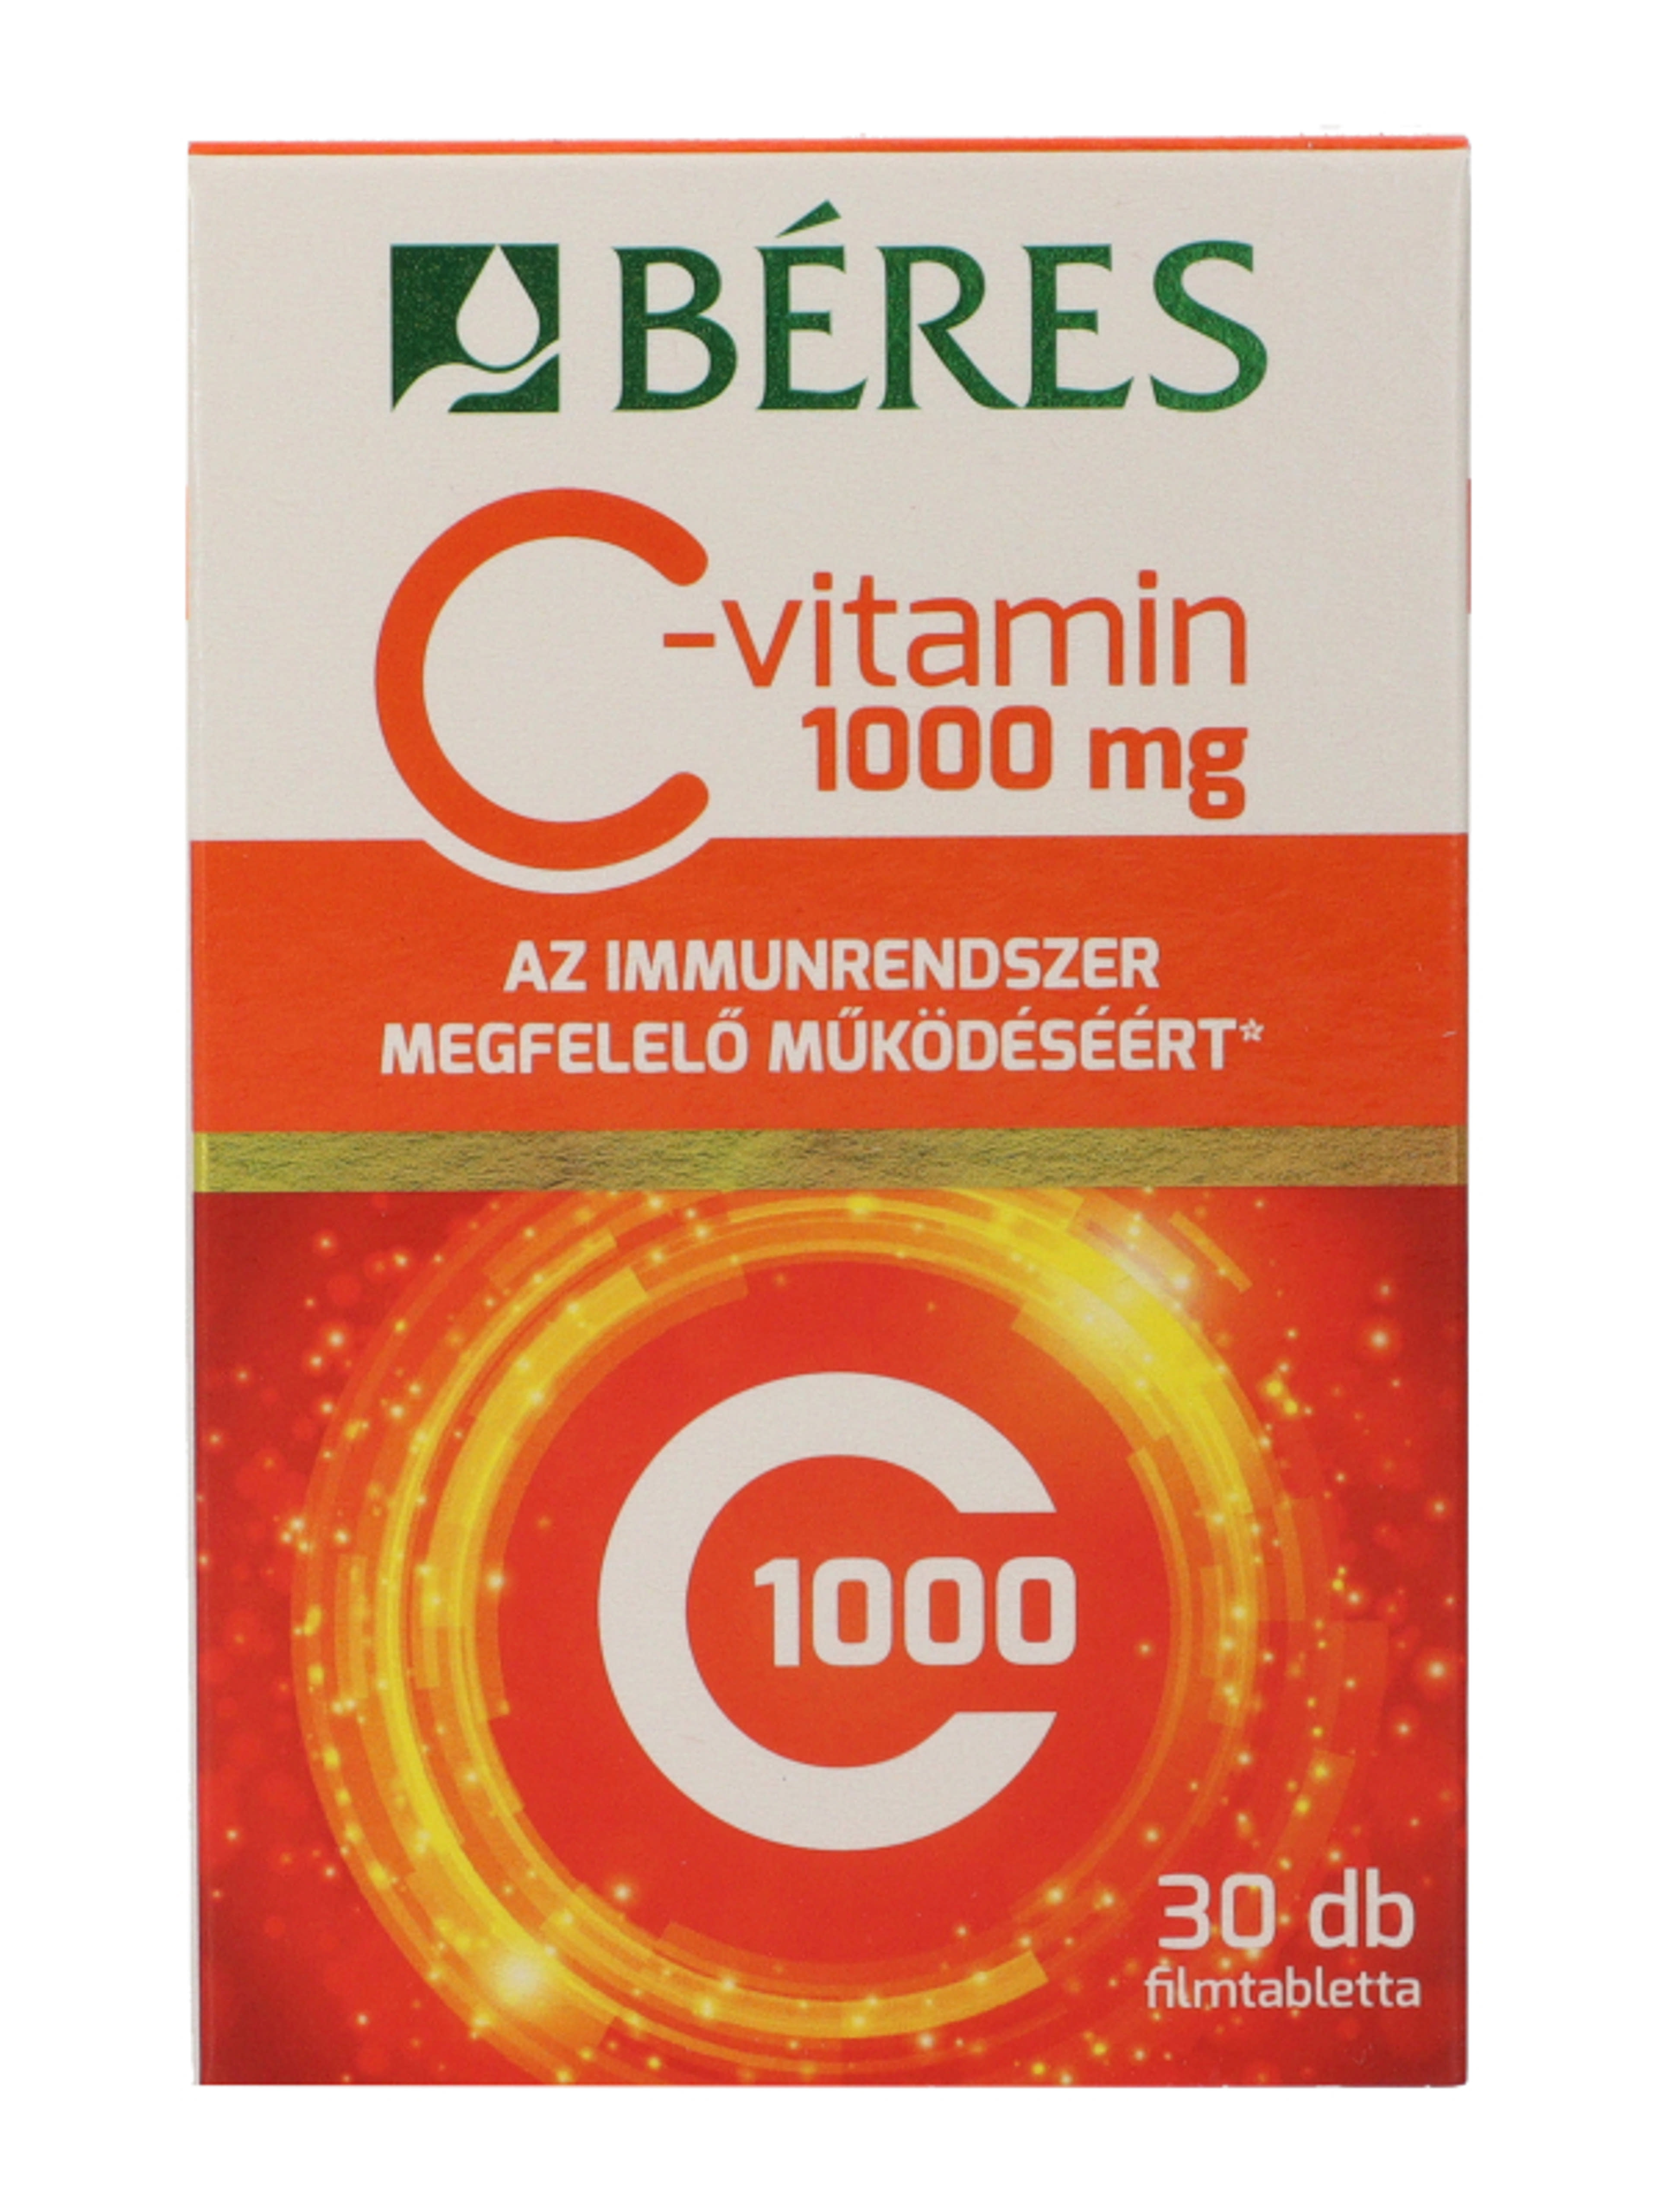 Beres C-vitamin 1000 mg filmtabletta - 30 db-3